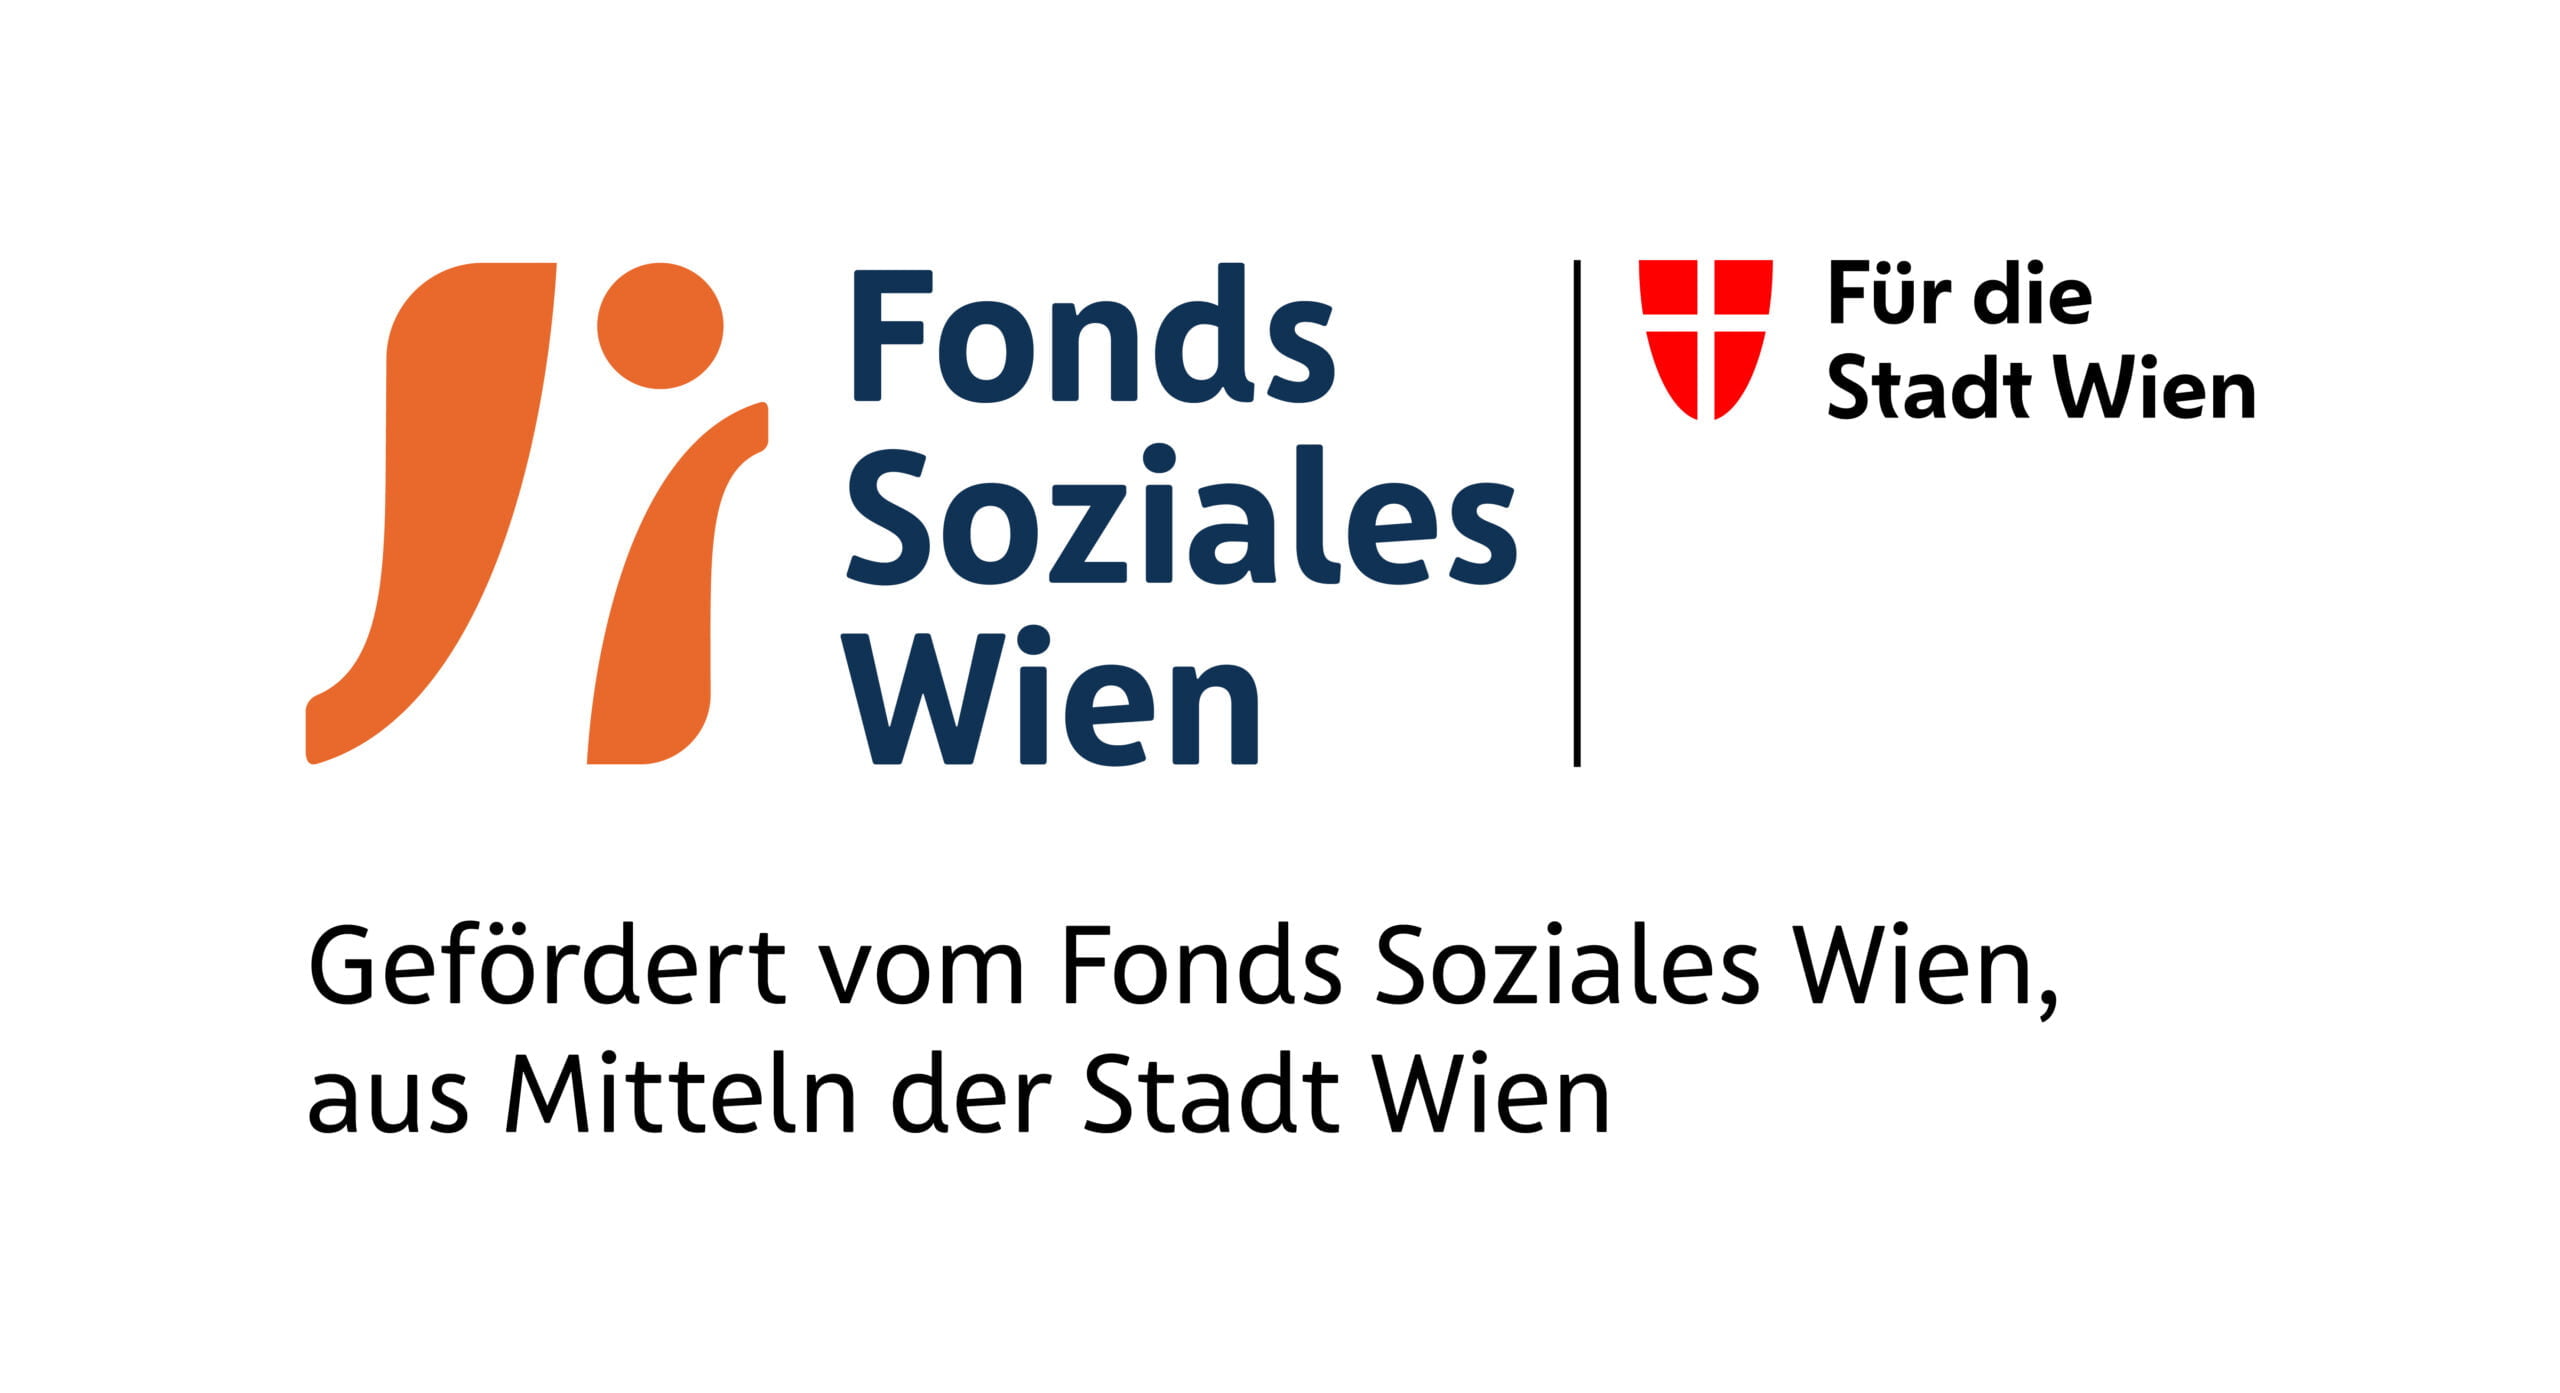 fsw-fonds-soziales-wien-logo-3